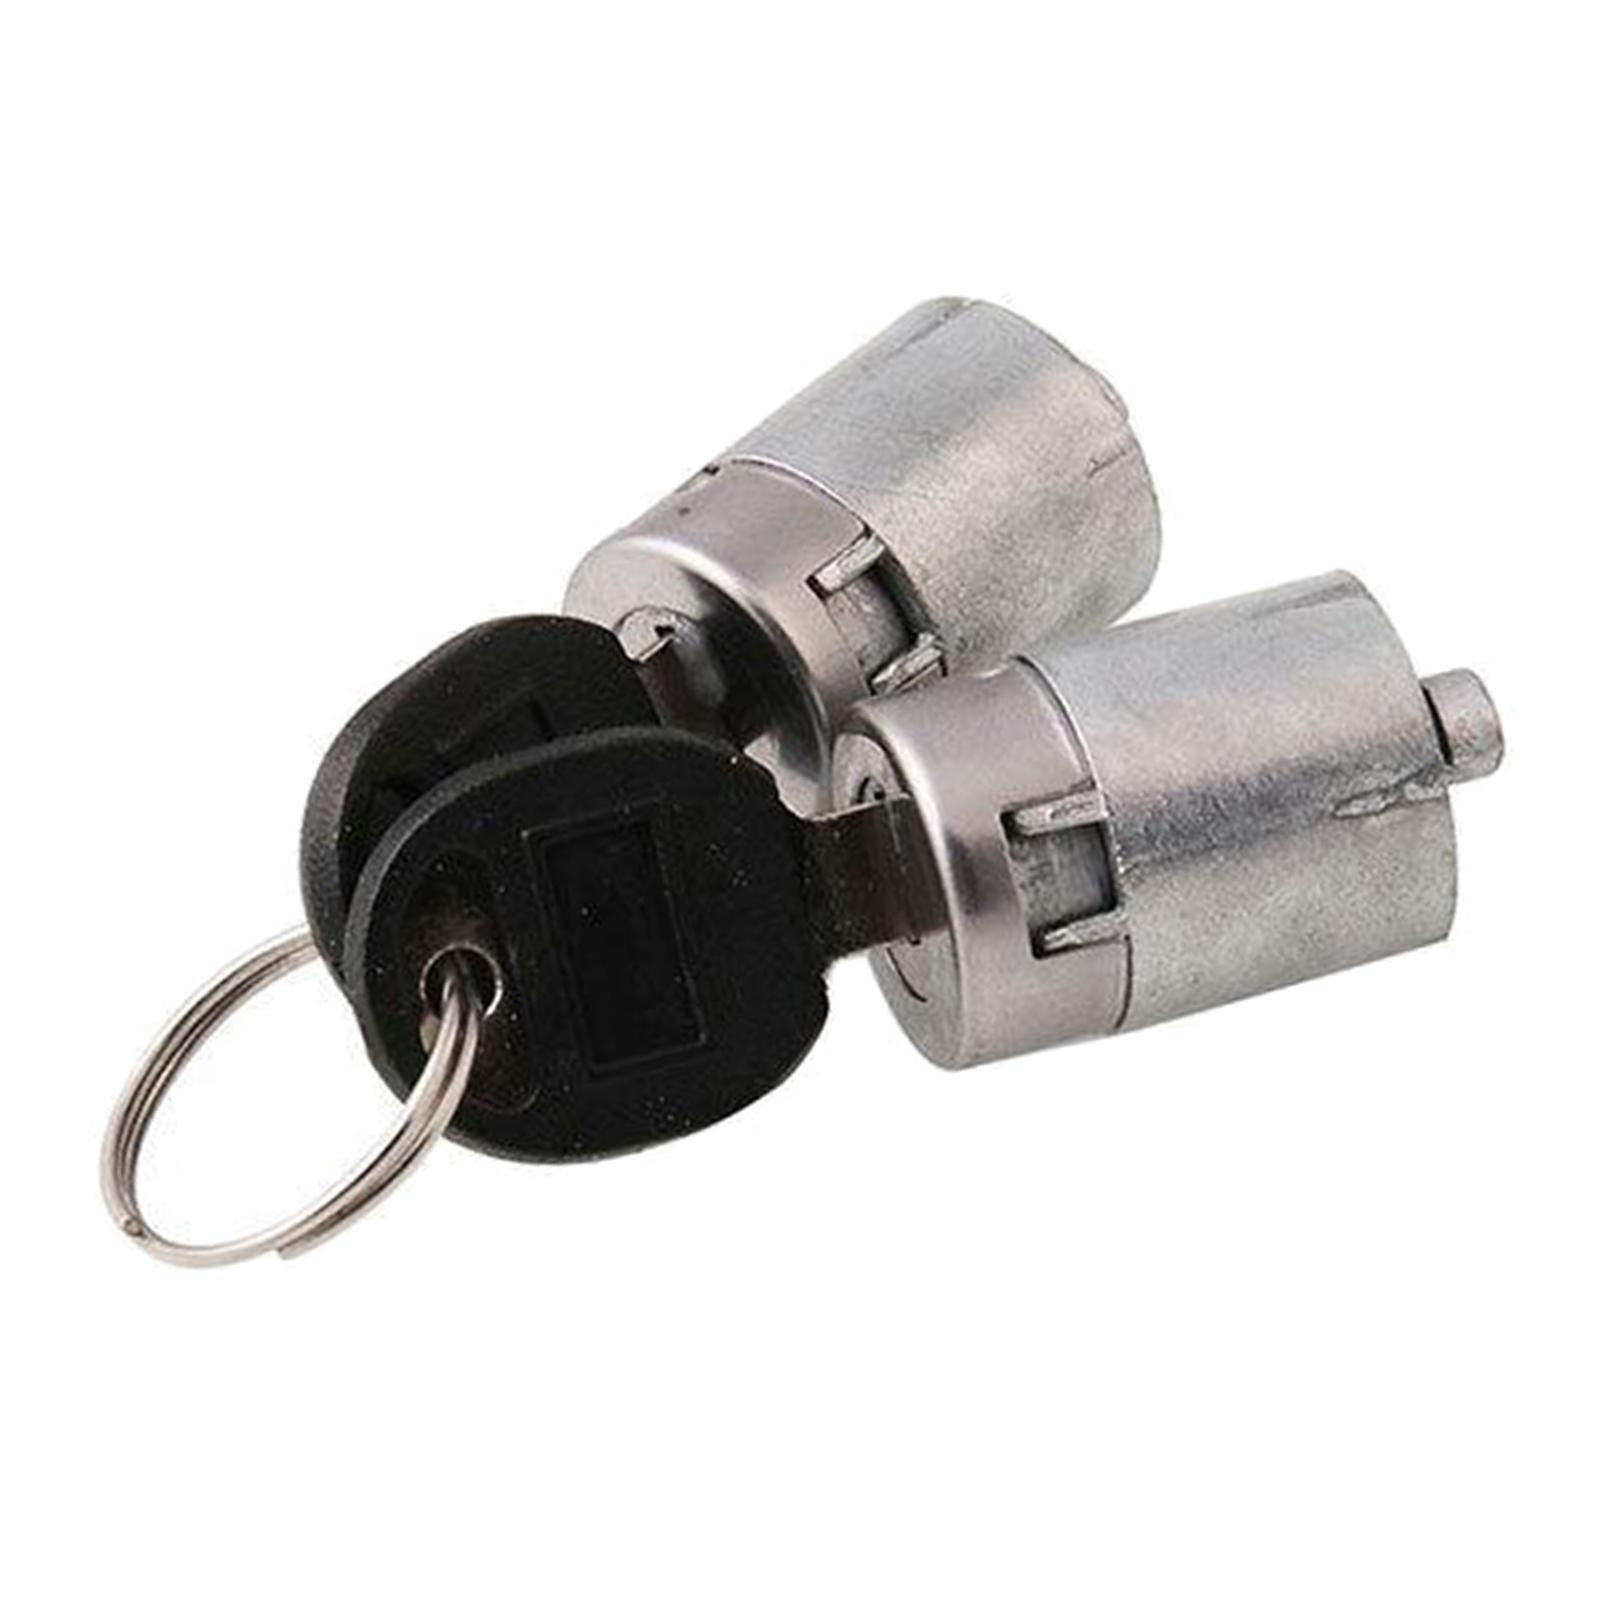 Set of 2 Lock Cylinders Door Lock Vehicle Door Security Lock Easy to Use